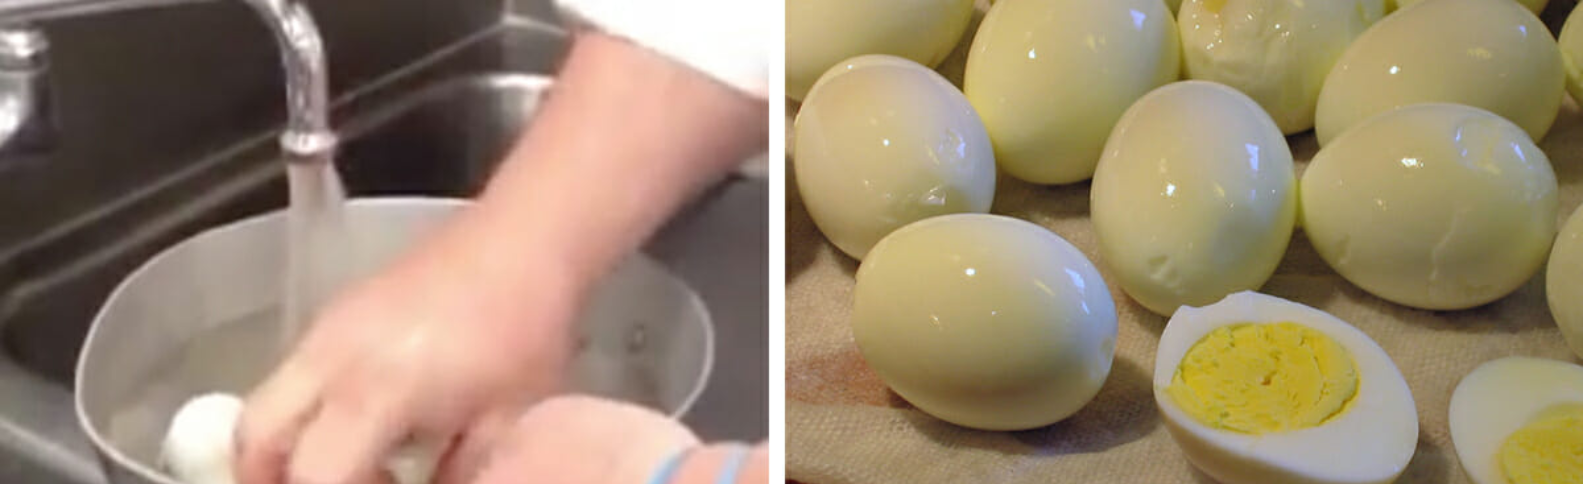 Jak snadno oloupat vajíčka? Inspirujte se jednoduchým trikem!